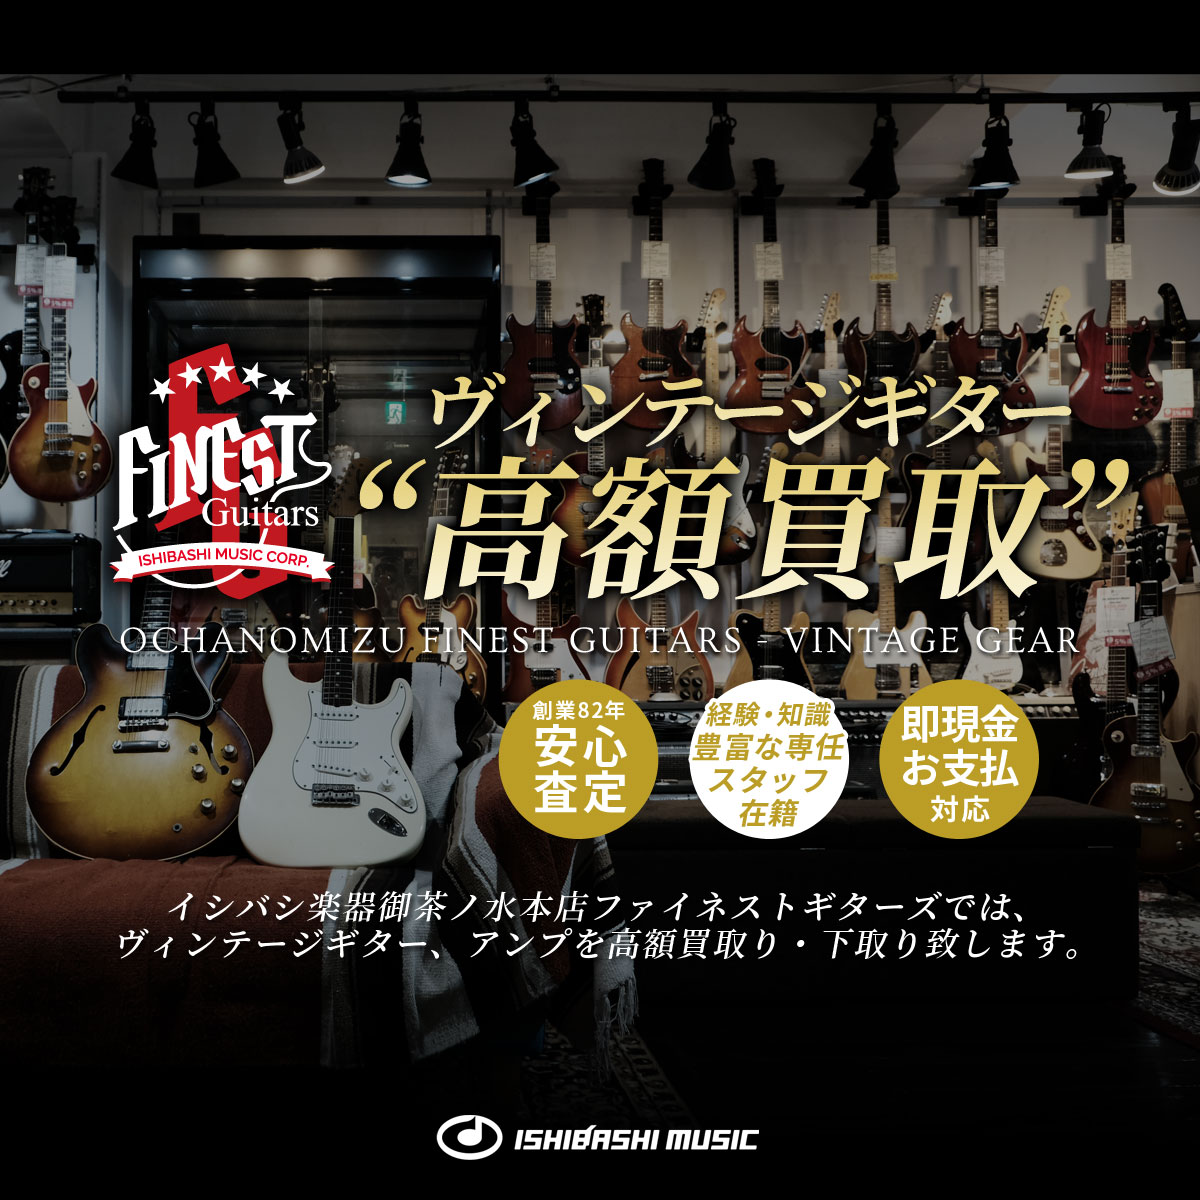 御茶ノ水本店 FINEST GUITARS ヴィンテージギター高額買取